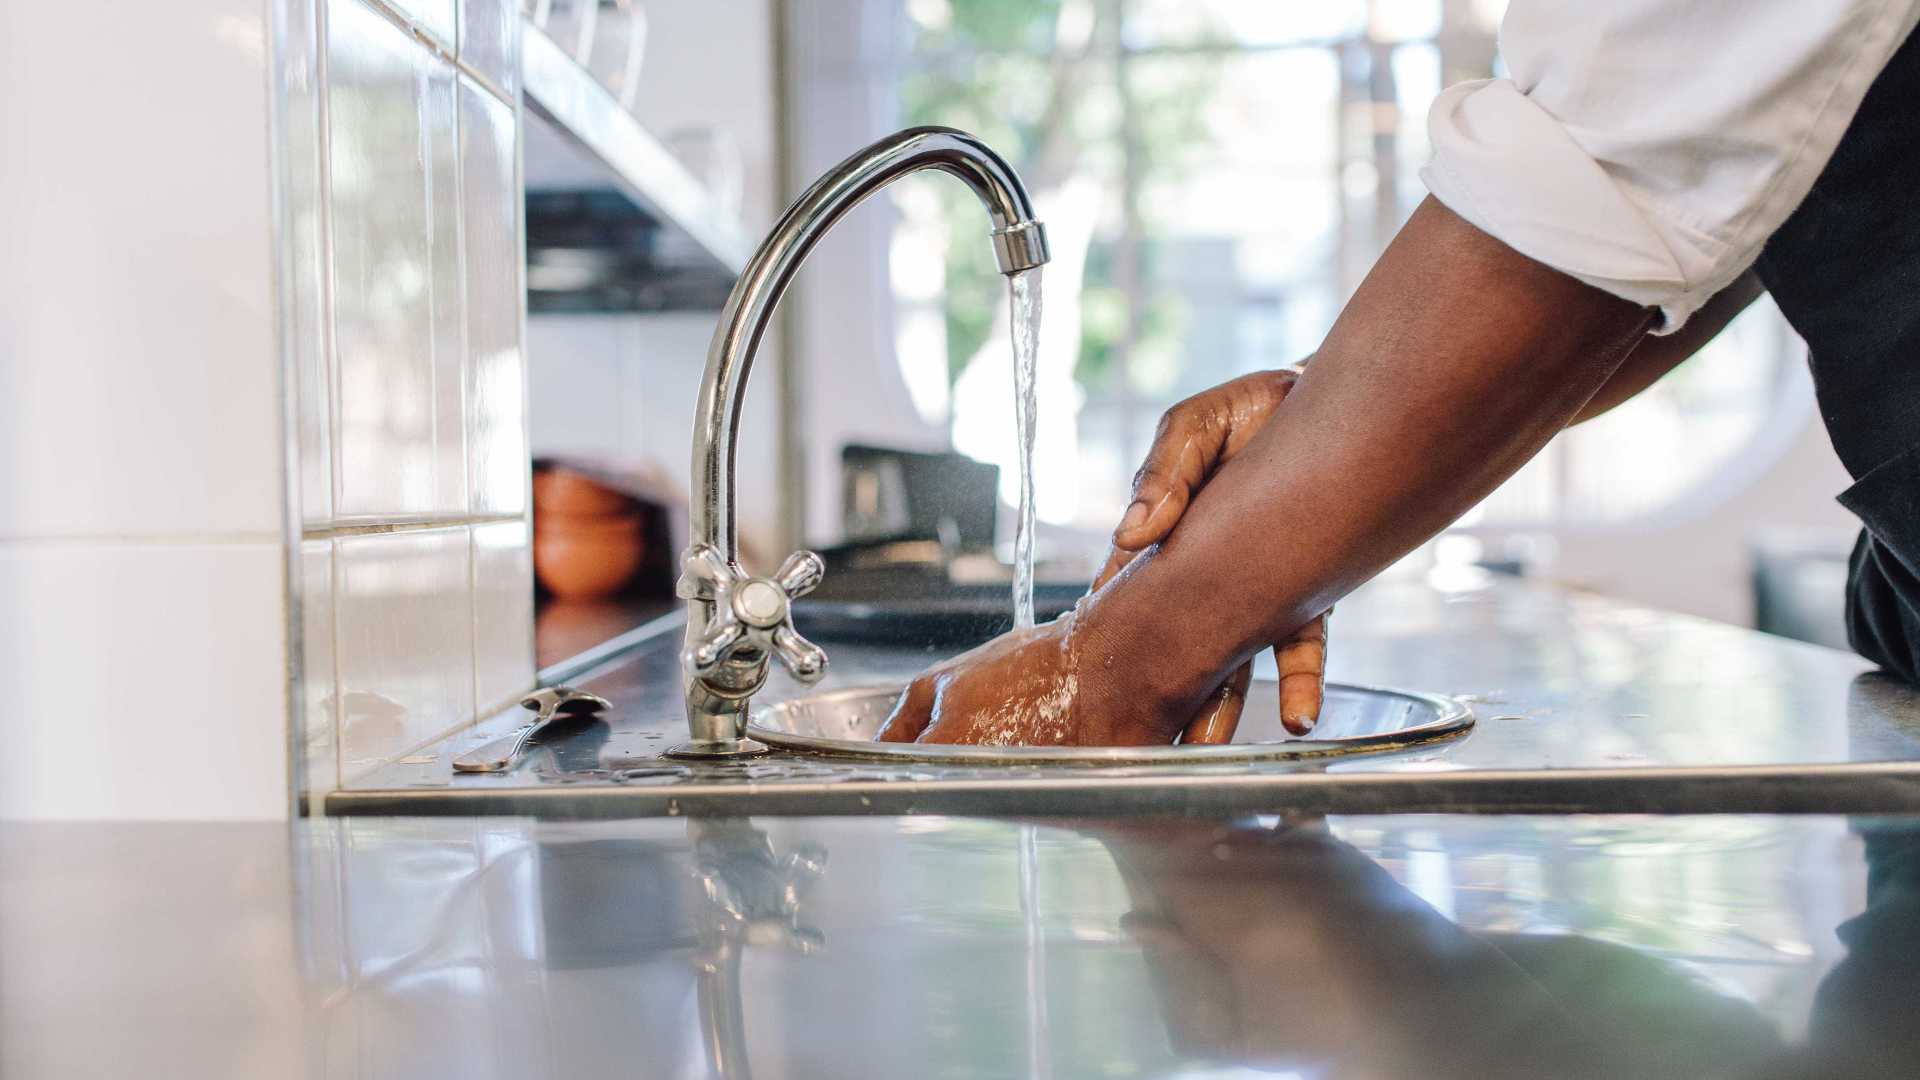 Lavar as mãos pode salvar sua vida; entenda